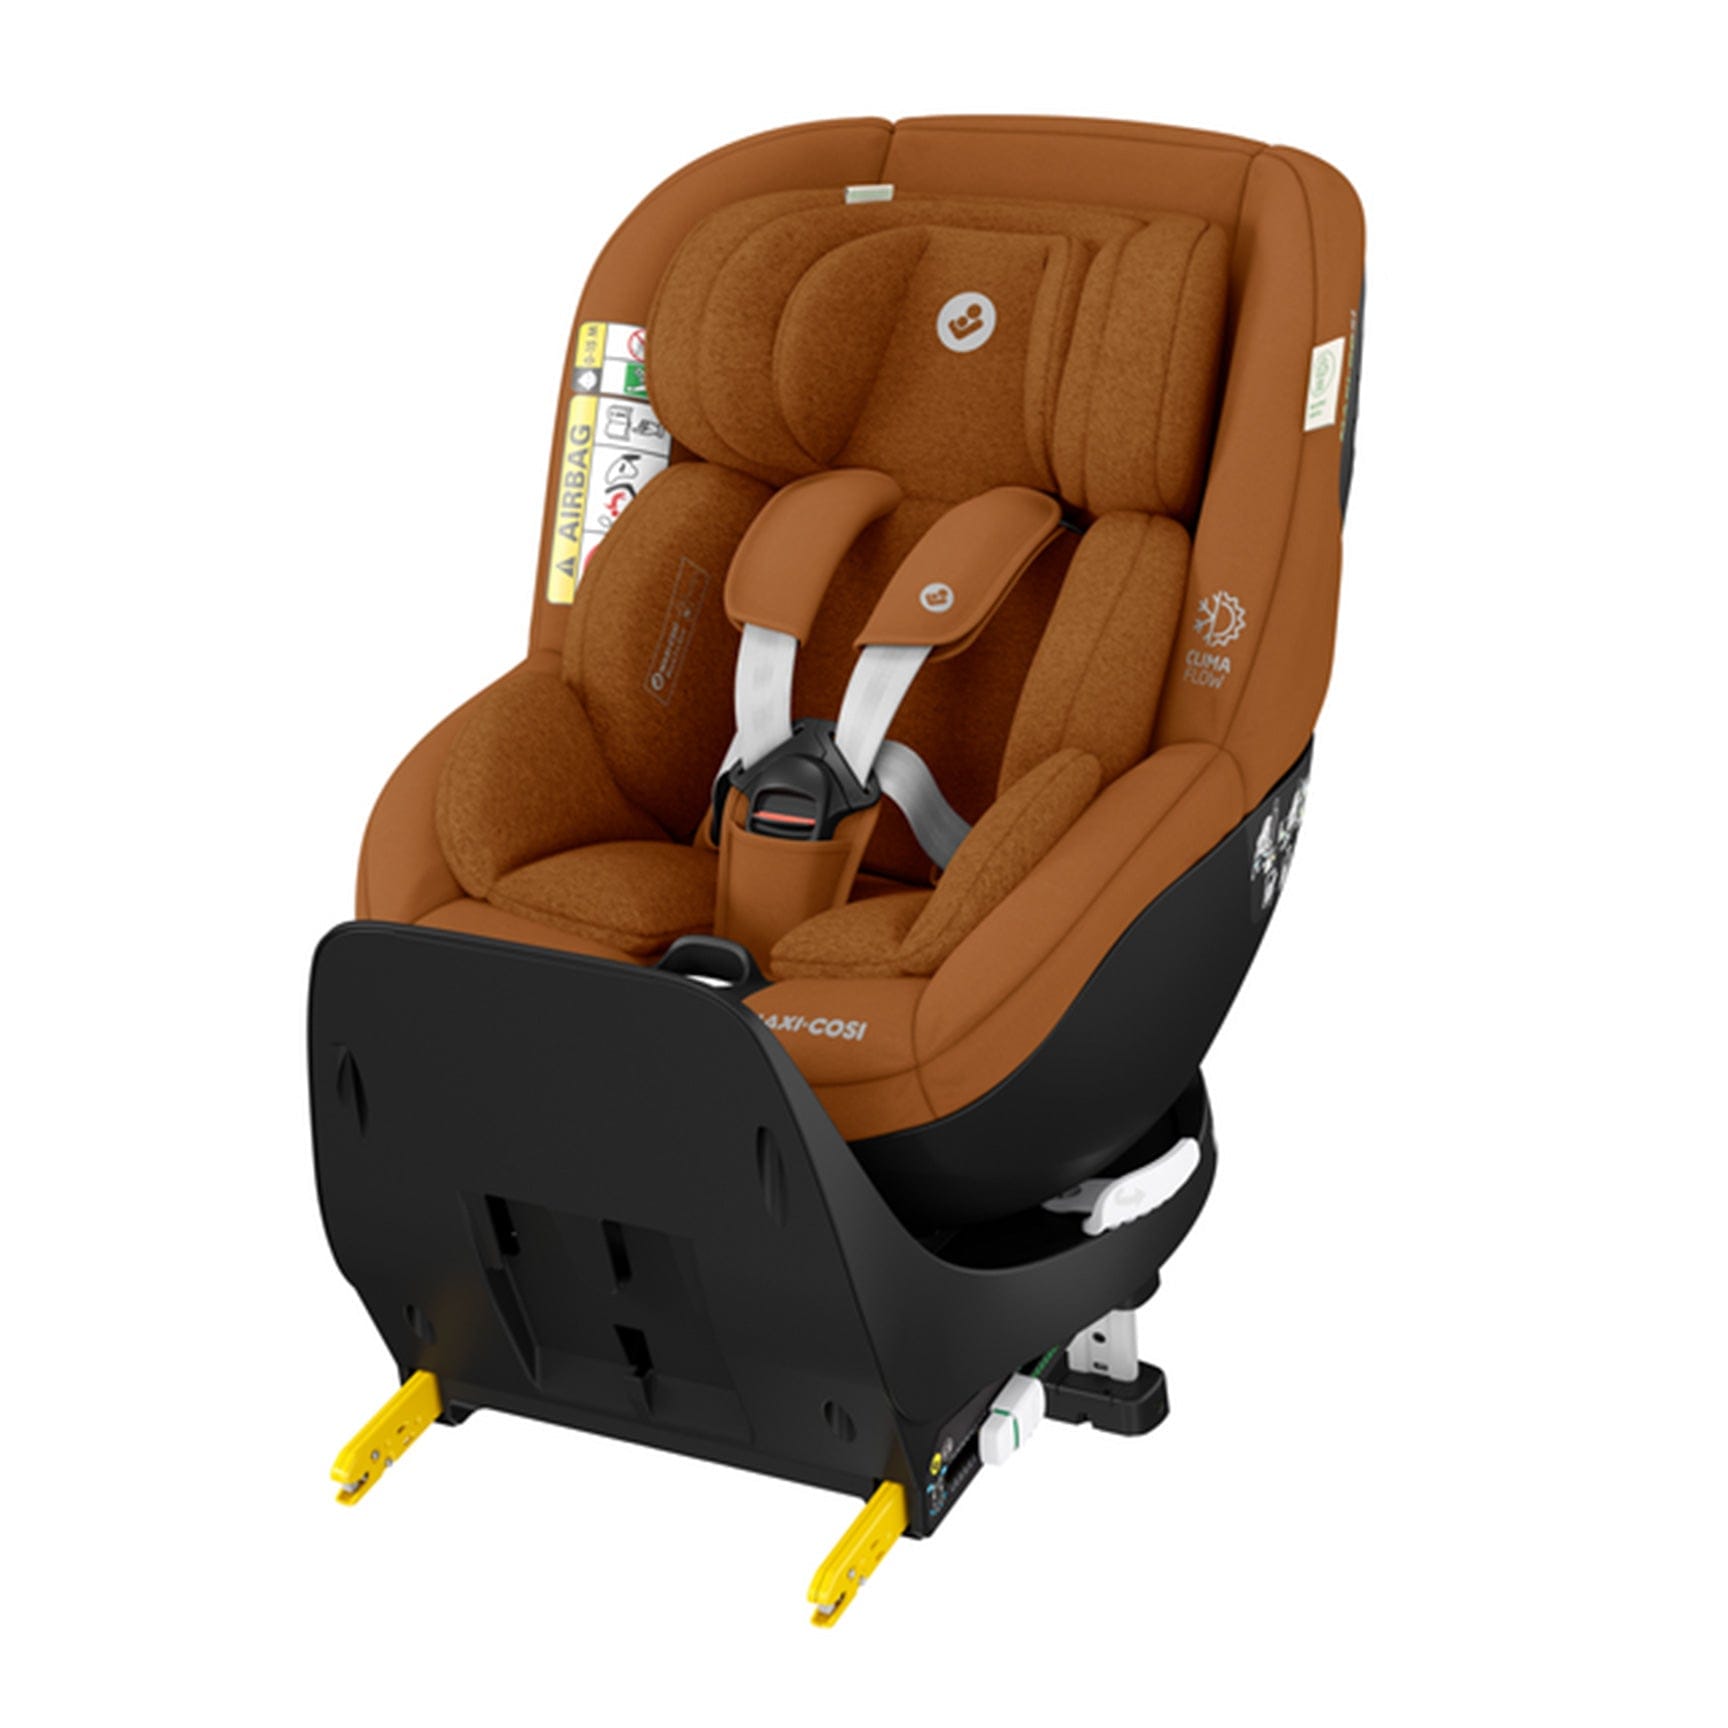 Maxi-Cosi baby car seats Maxi-Cosi Mica Pro Eco i-Size in Authentic Graphite 8515650110